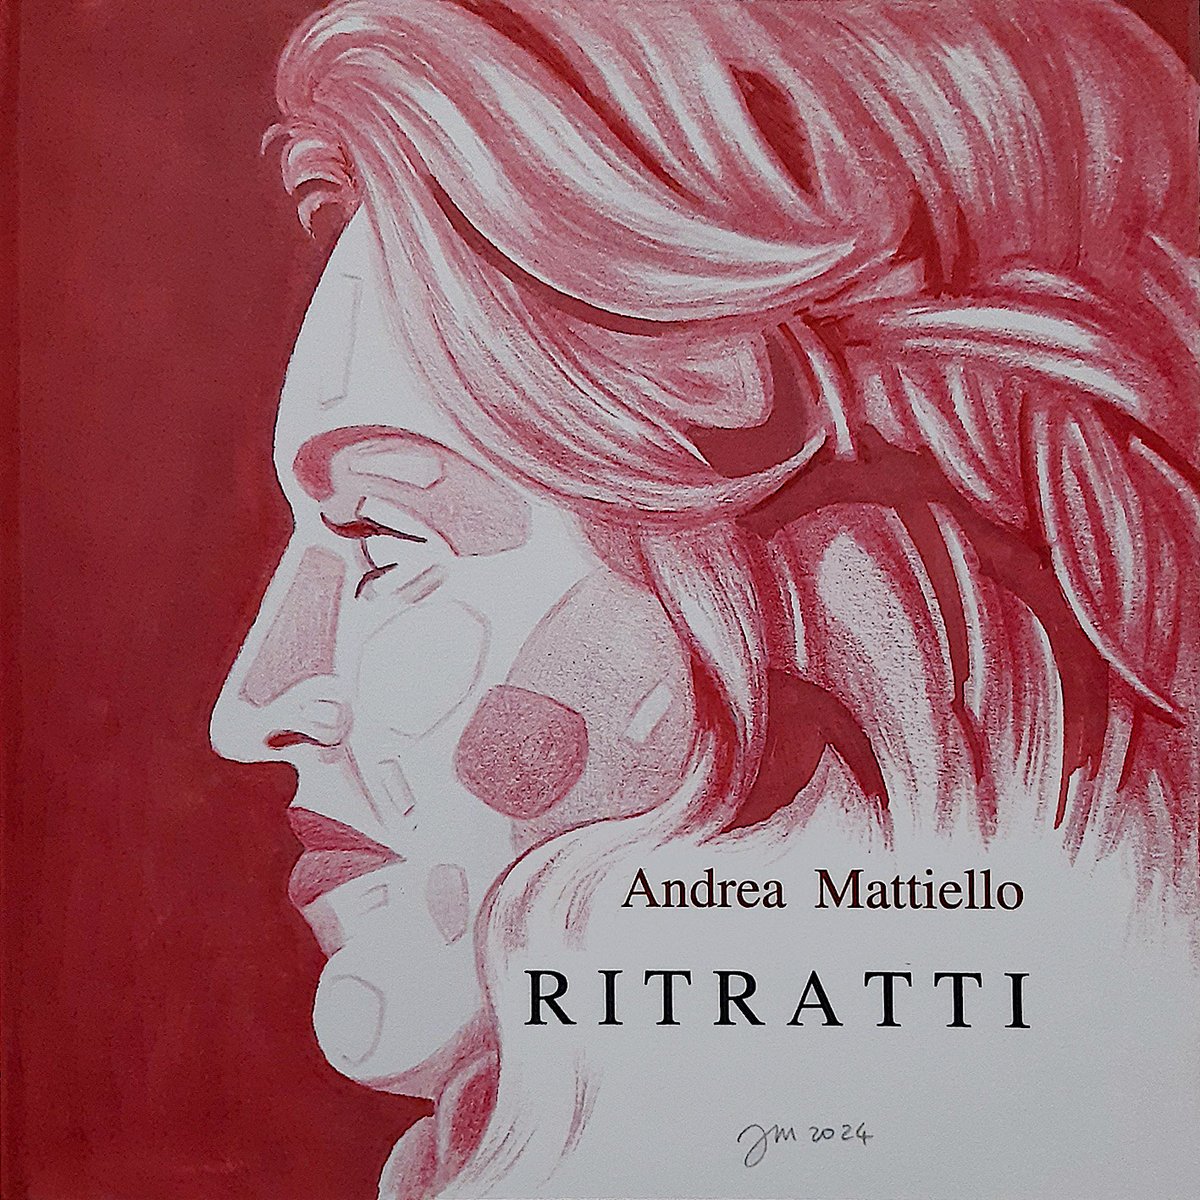 andrea mattiello : 'RITRATTI - Catalogo opera' andreamattiello.blogspot.com/2024/03/ritrat………   
#madonna #ritratti #contemporaryart #popart #icon